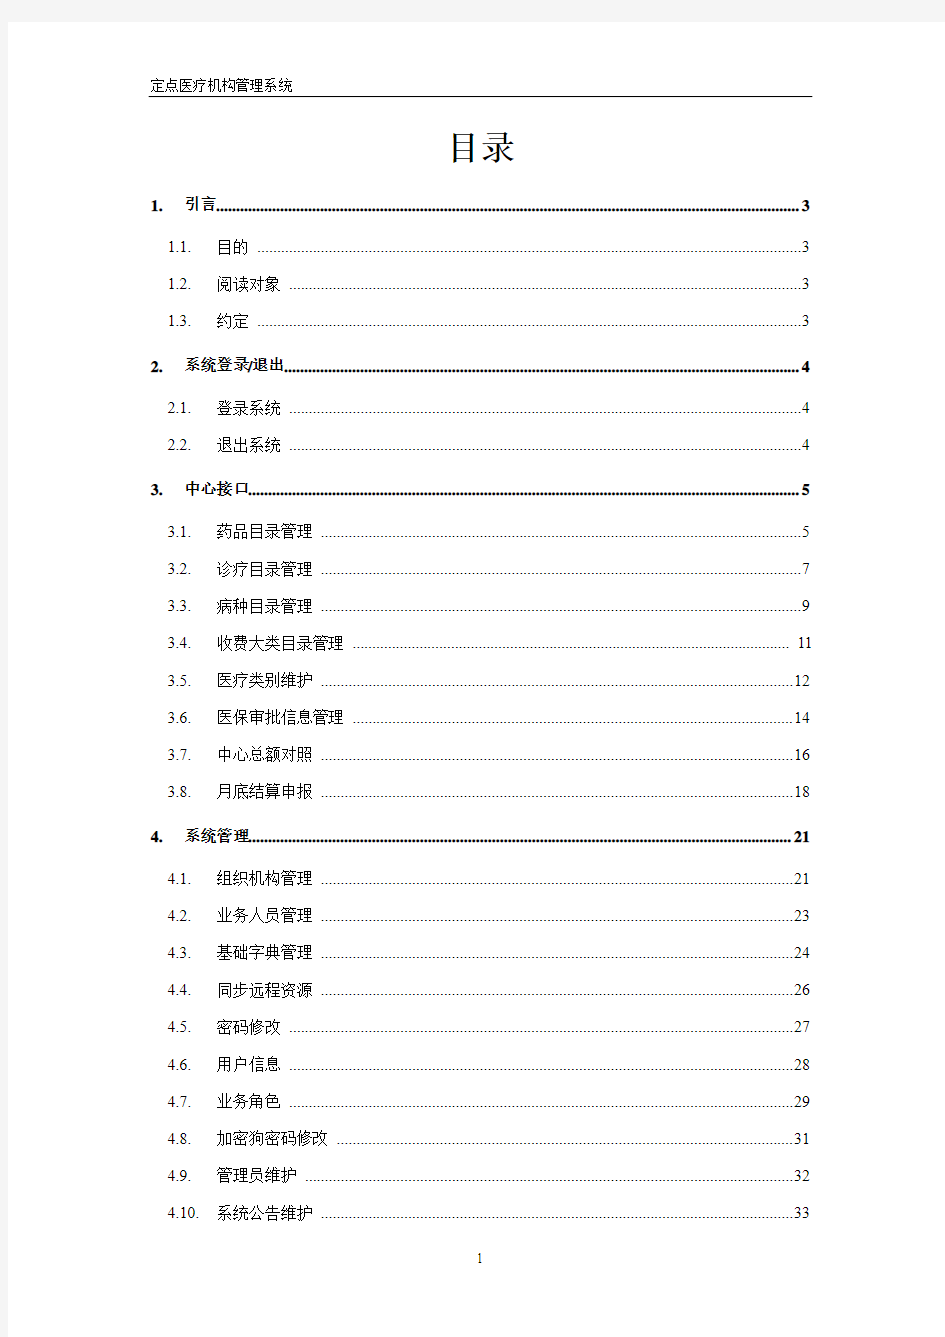 河南省医保收费系统-中心接口及系统管理部分用户手册